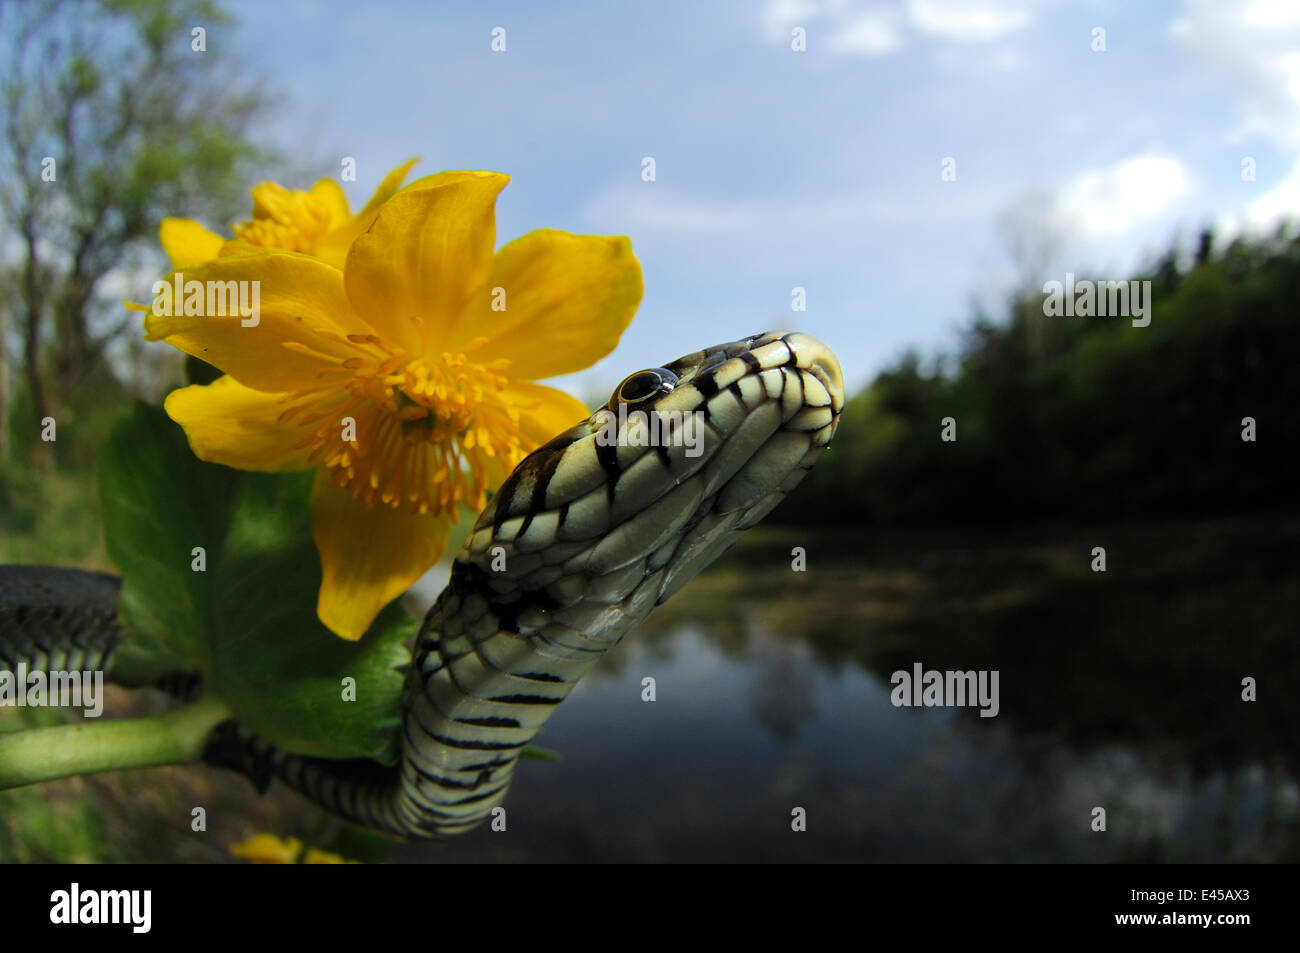 Couleuvre à collier (Natrix natrix) à côté de populage des marais fleur dans l'habitat riverain, Allemagne Banque D'Images